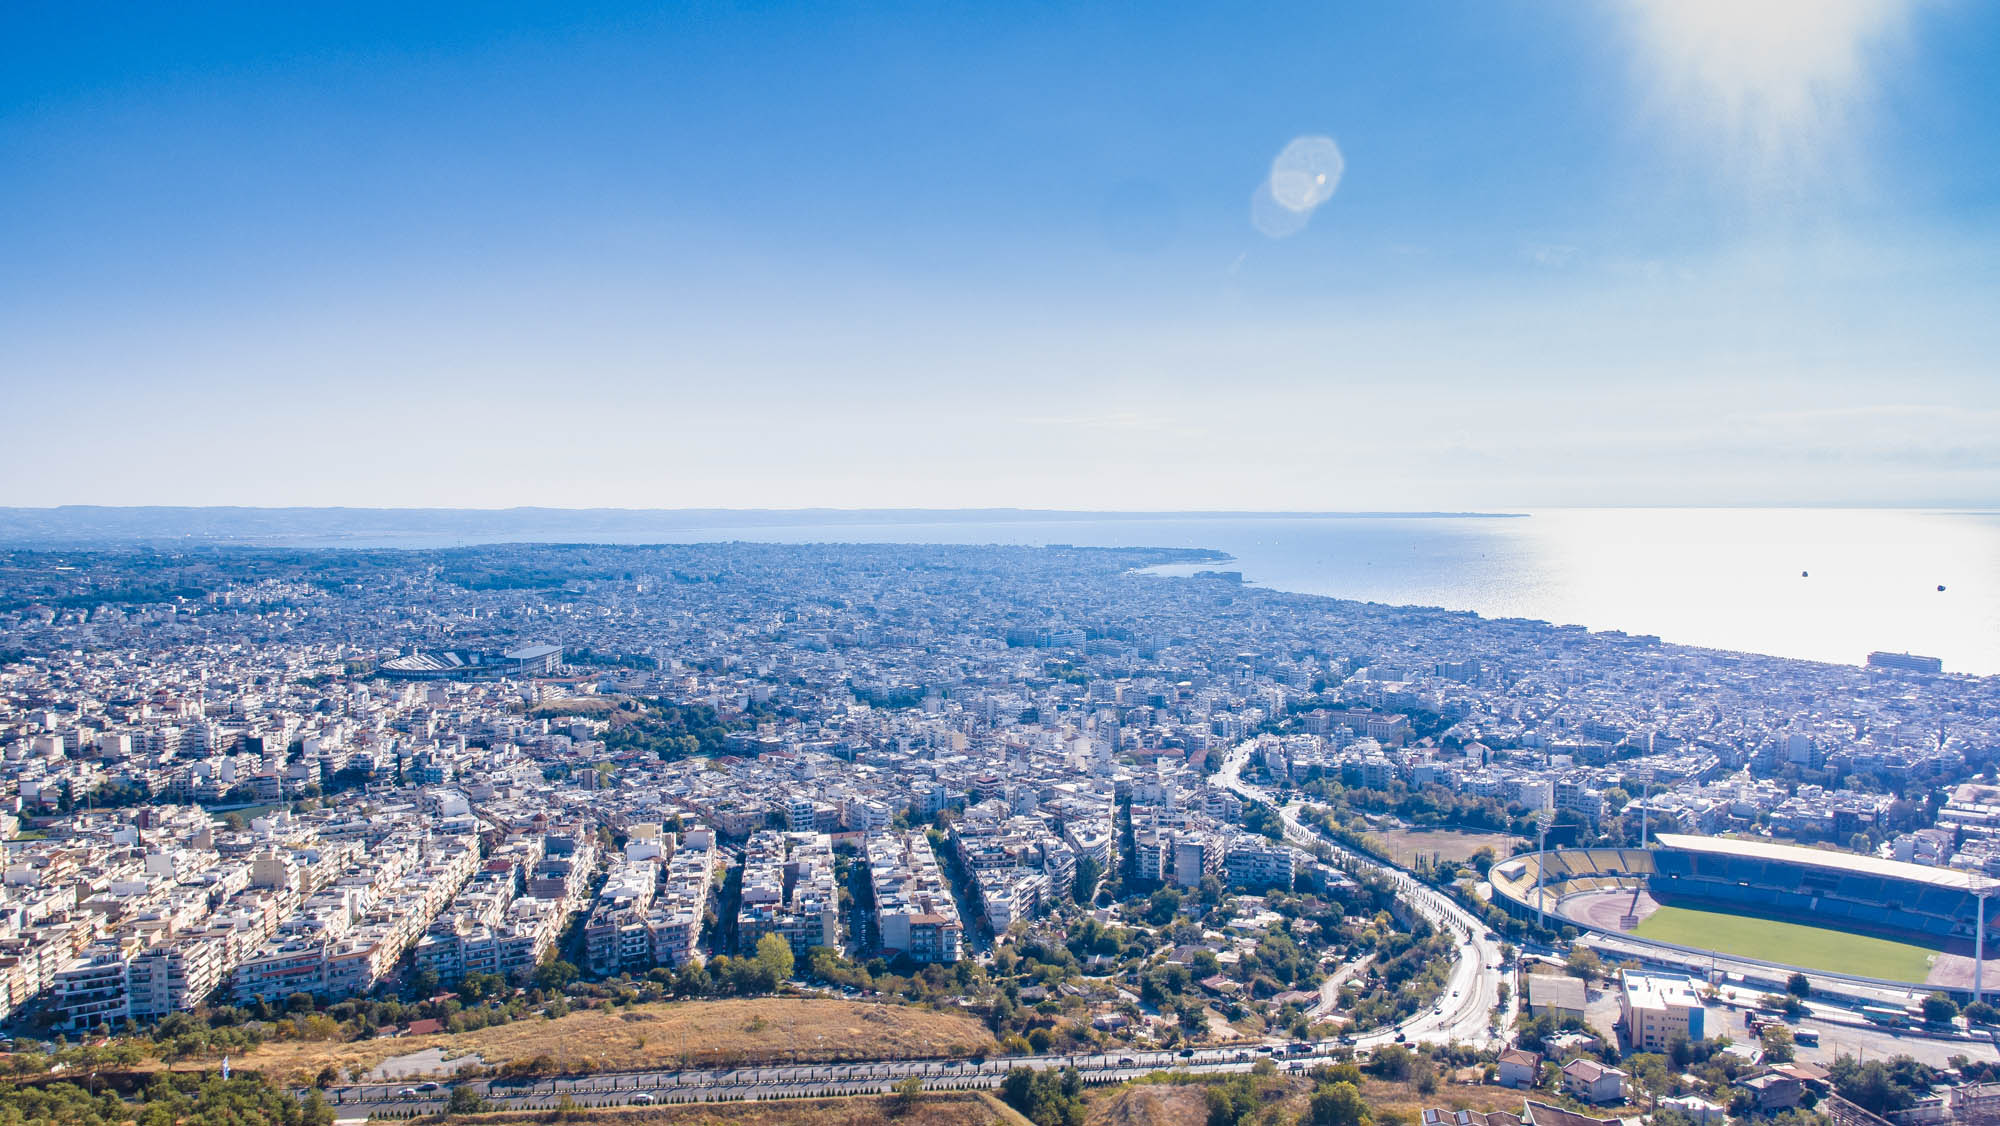 Widok na Saloniki z lotu ptaka, niebo, morze i piękne miasto